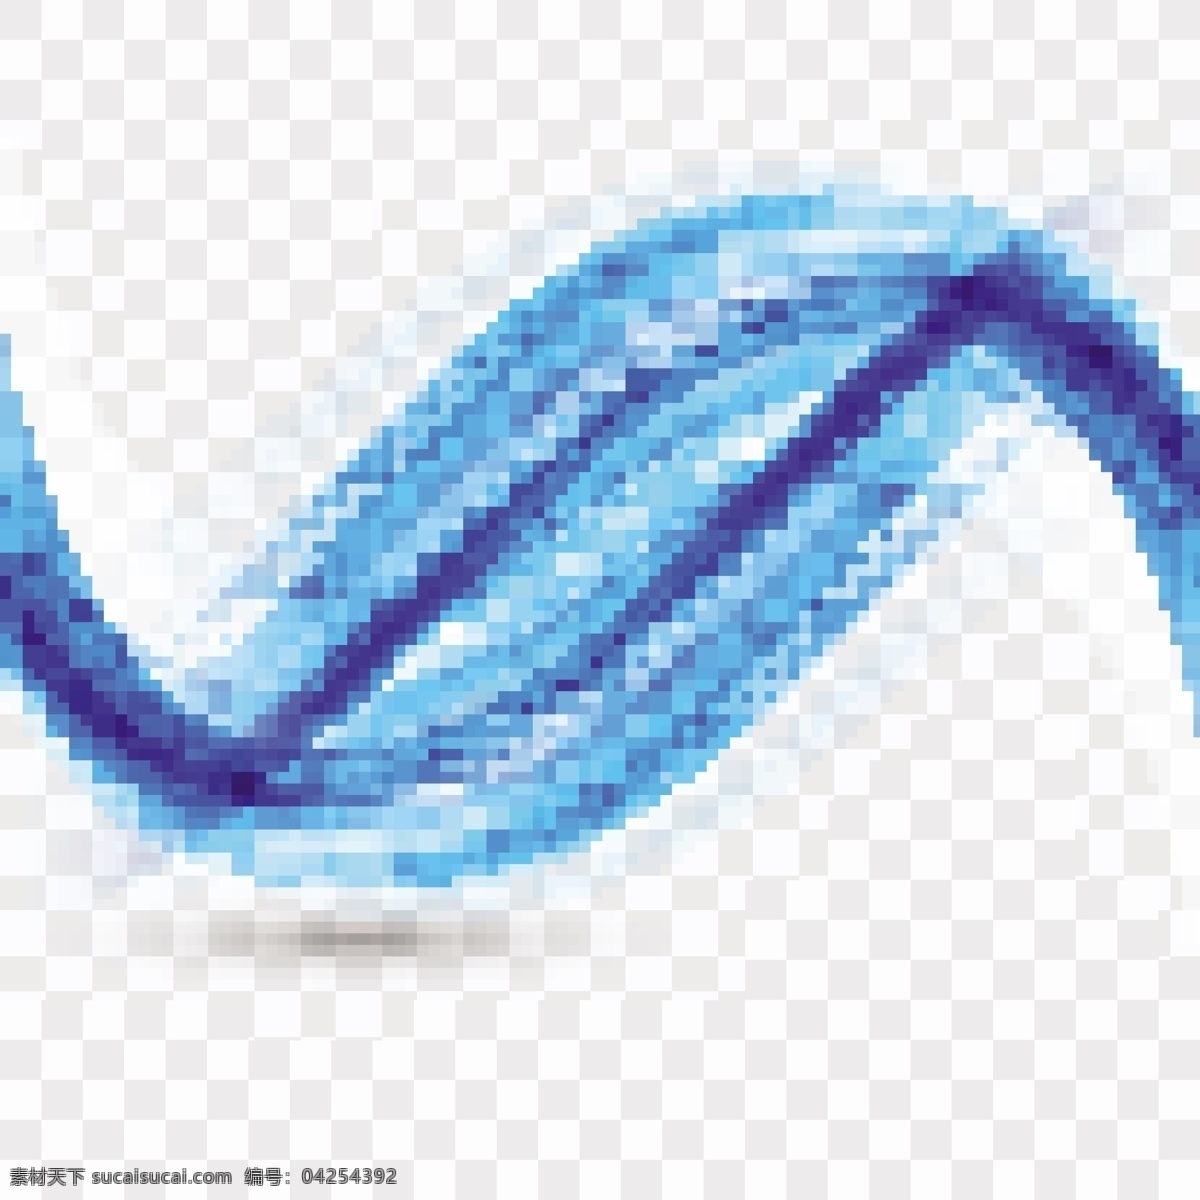 浮蓝波形 背景 抽象 模板 波浪 蓝色 形状 烟雾 现代 抽象的形状 波浪状 柔软 有光泽 浮动 波浪背景 环境 波浪形